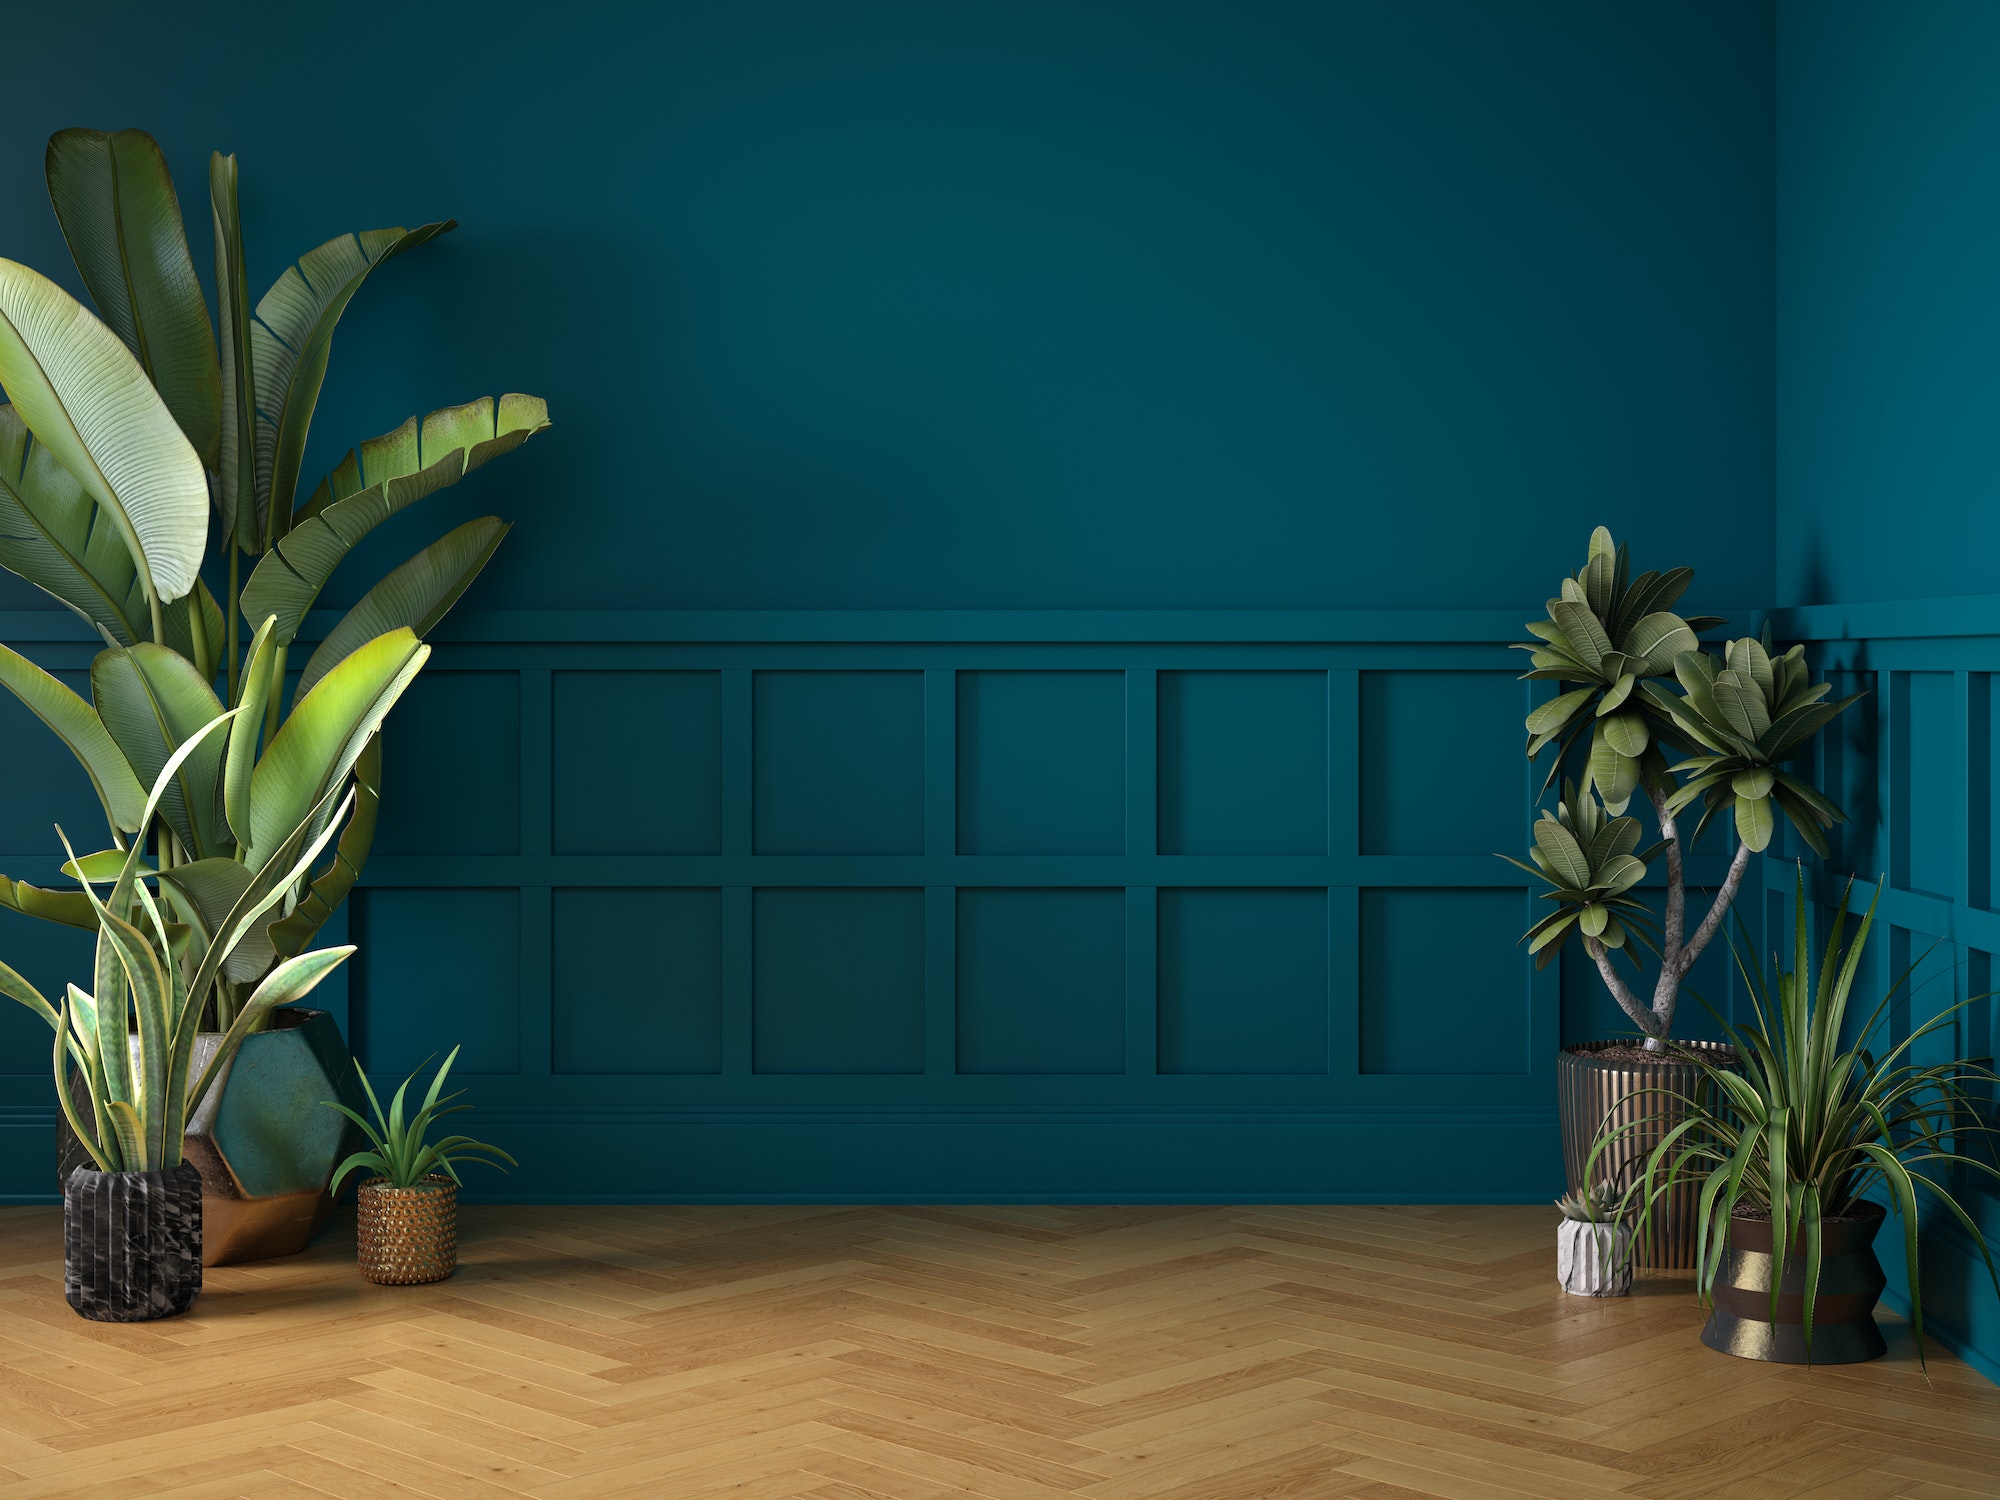 Empty classic art deco interior room with plants